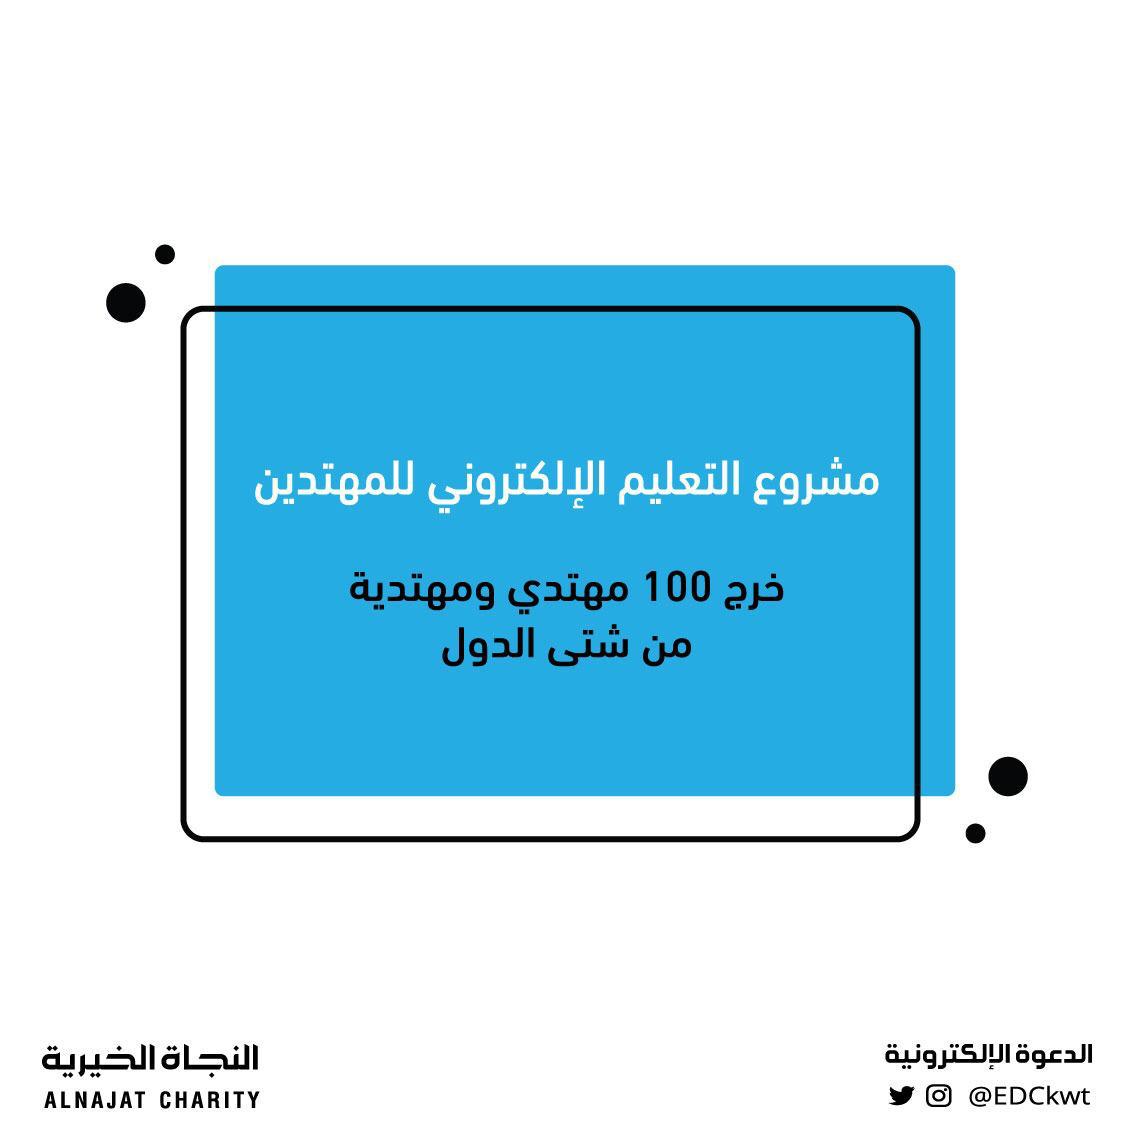 لقاء الاستاذ/ عبد الله الدوسري وحديث عن جهود لجنة الدعوة الإلكترونية تجاه ملف التعليم